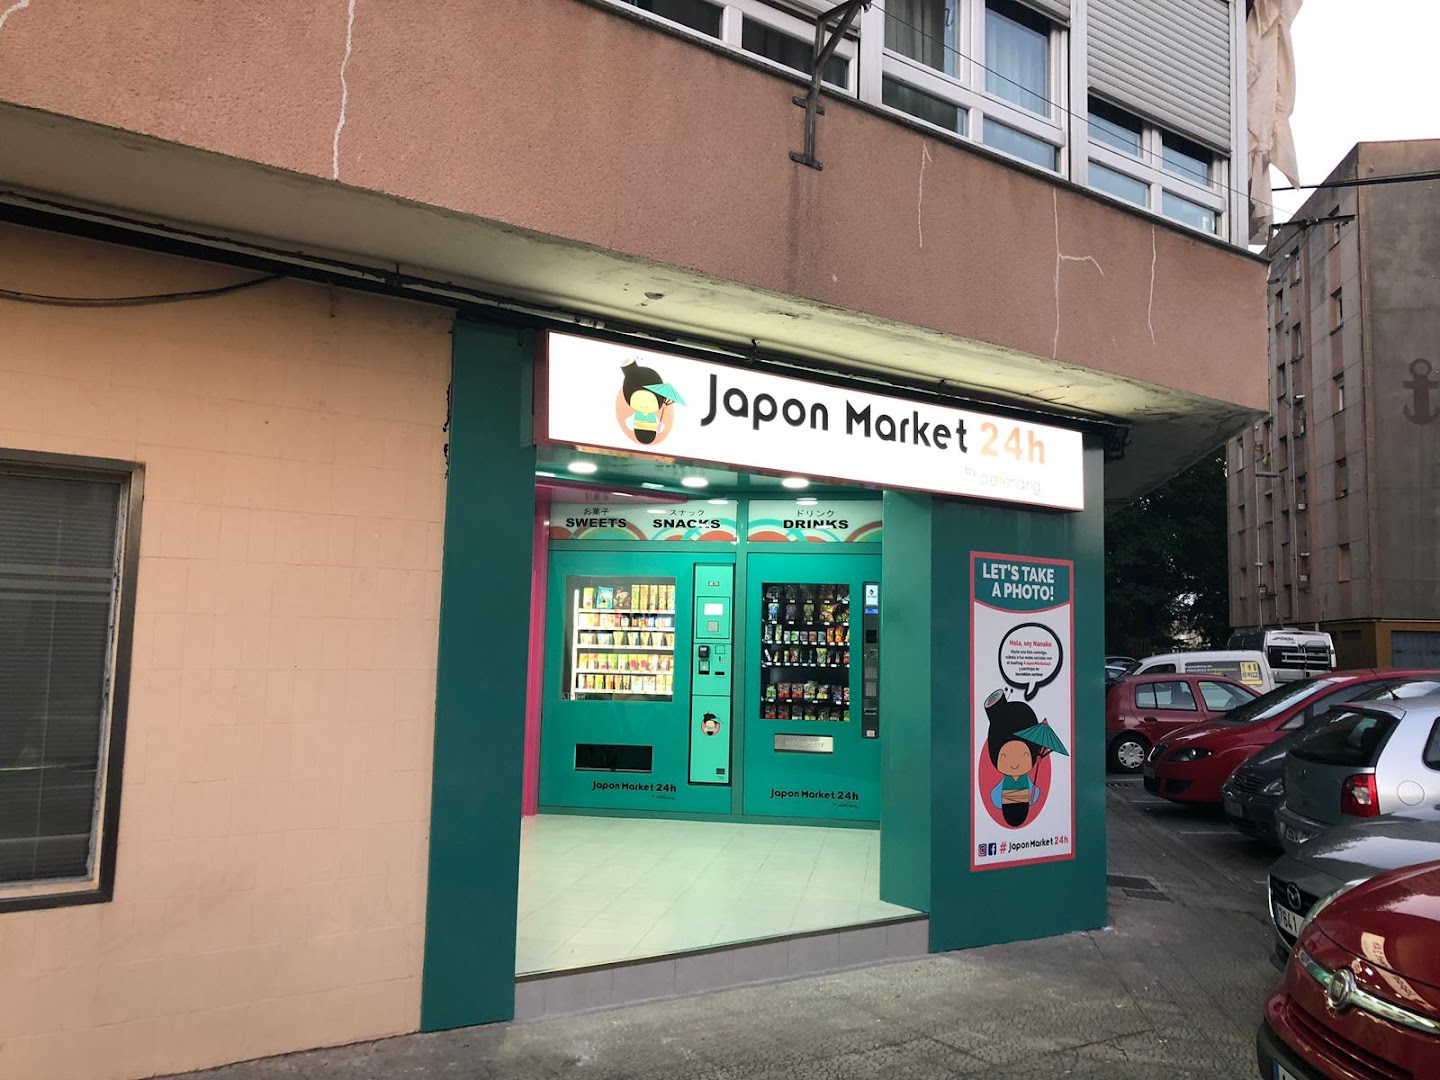 Japon market santander